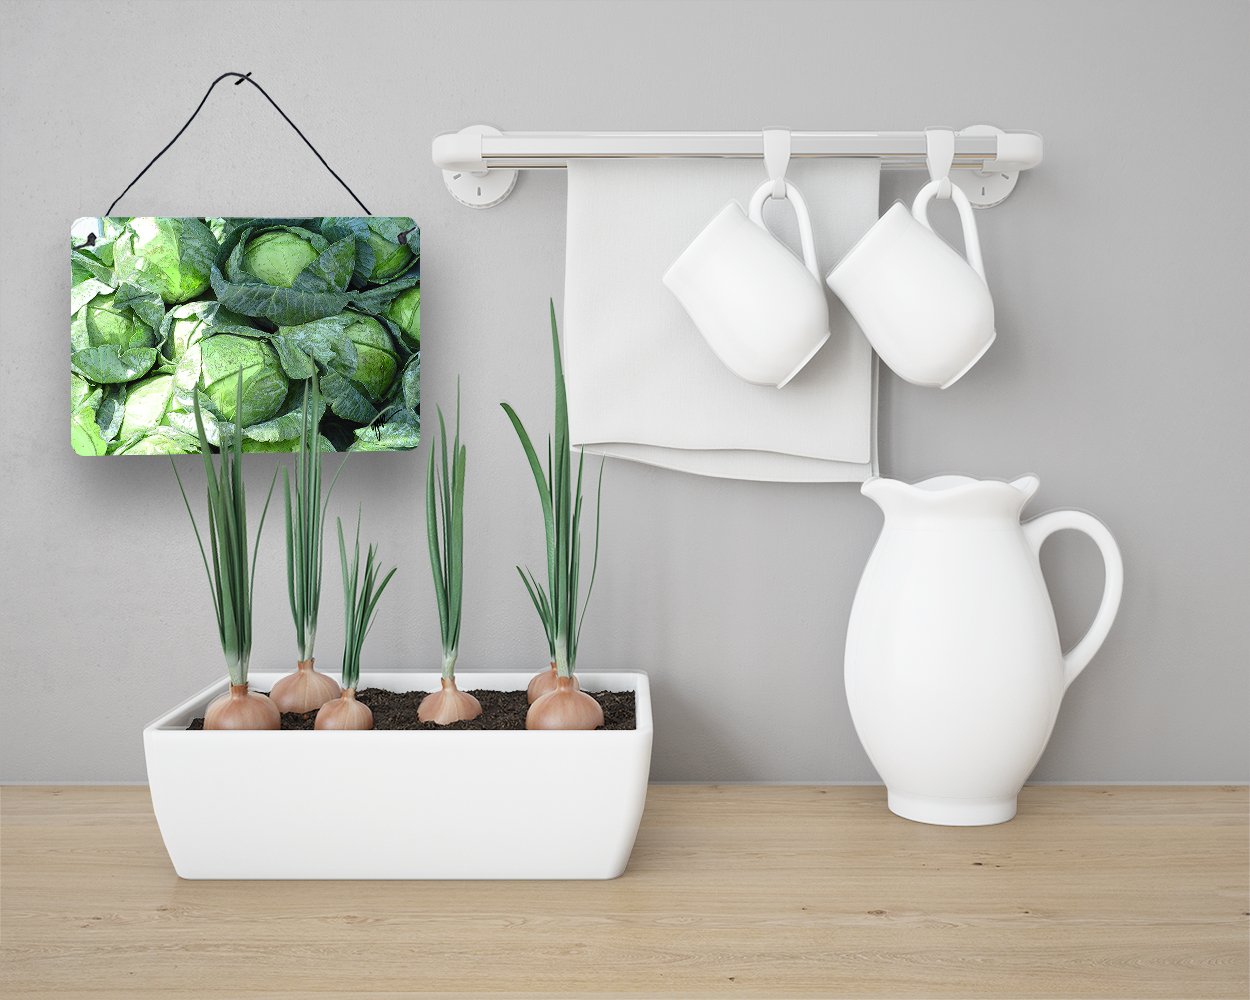 Cabbage by Gary Kwiatek Wall or Door Hanging Prints - the-store.com